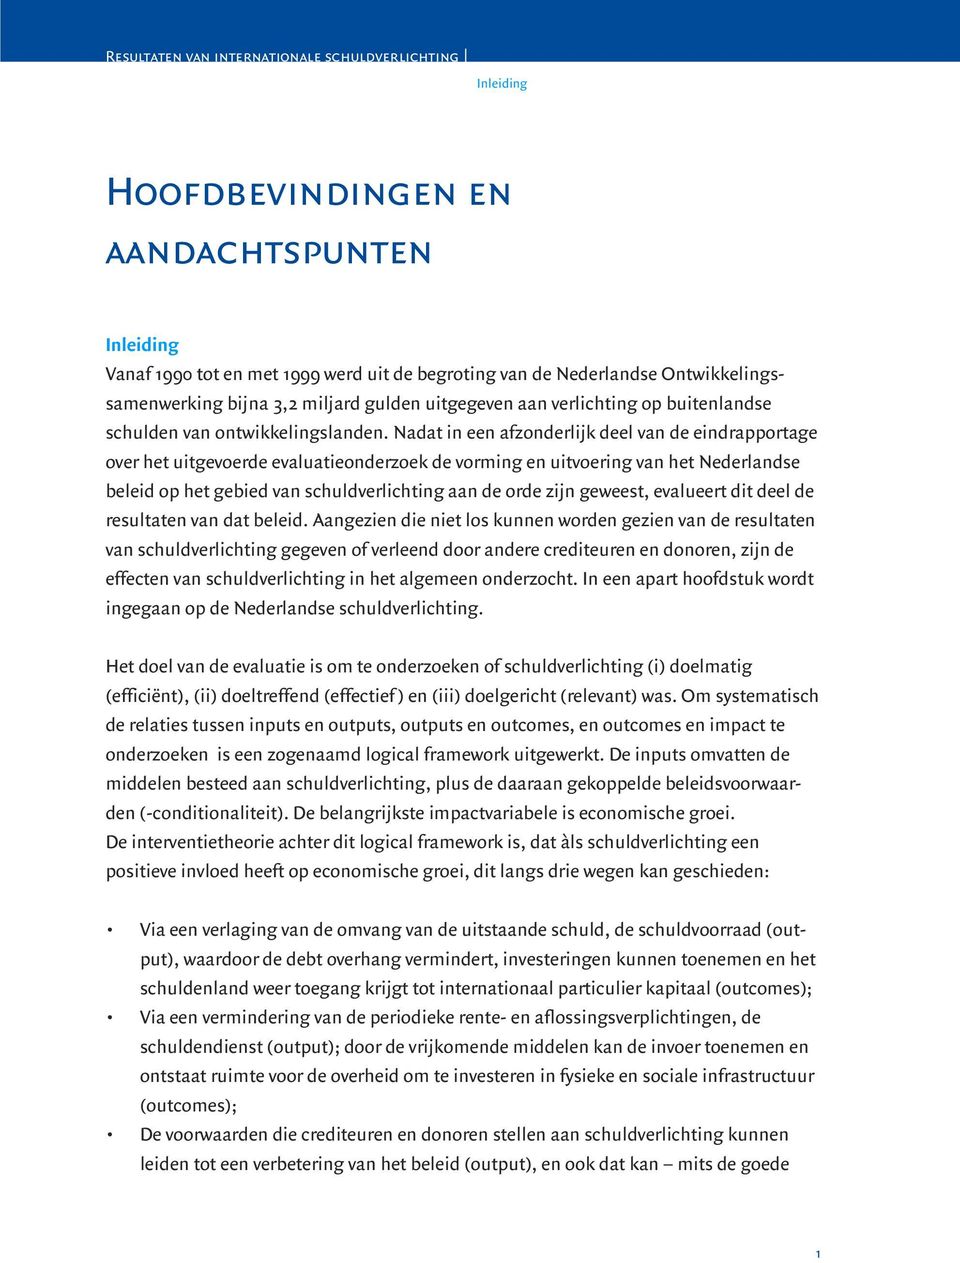 Nadat in een afzonderlijk deel van de eindrapportage over het uitgevoerde evaluatieonderzoek de vorming en uitvoering van het Nederlandse beleid op het gebied van schuldverlichting aan de orde zijn